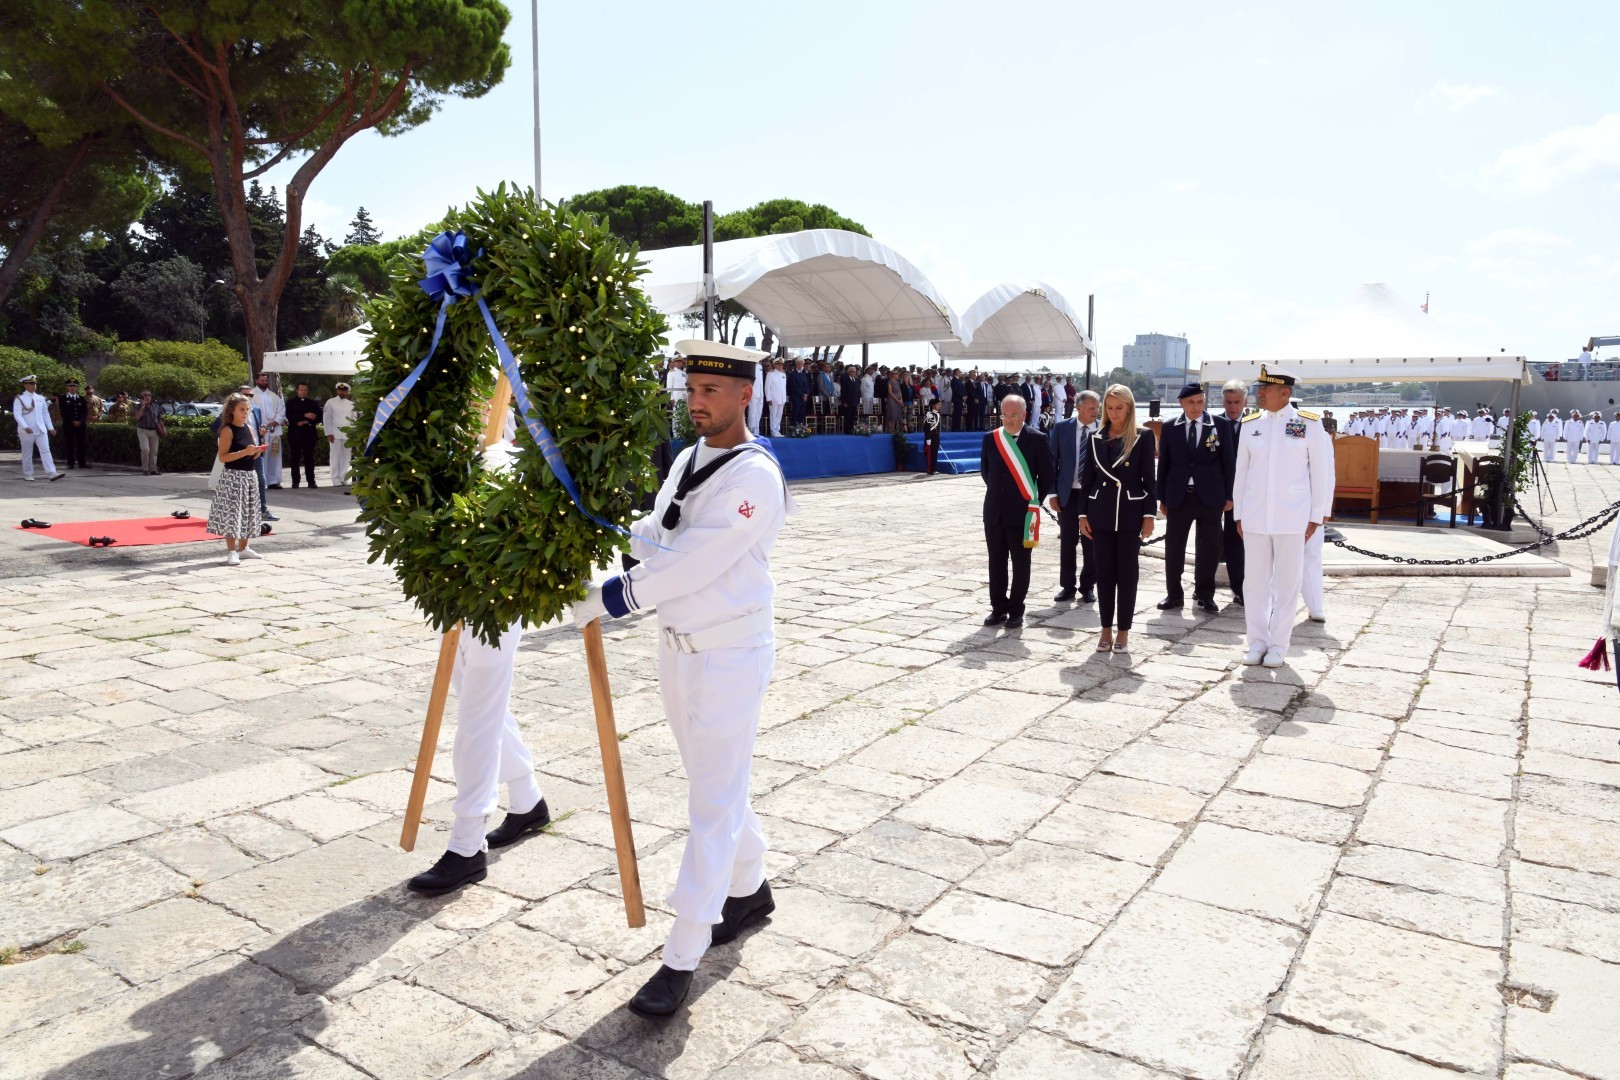 A Brindisi commemorati i marinai scomparsi in mare